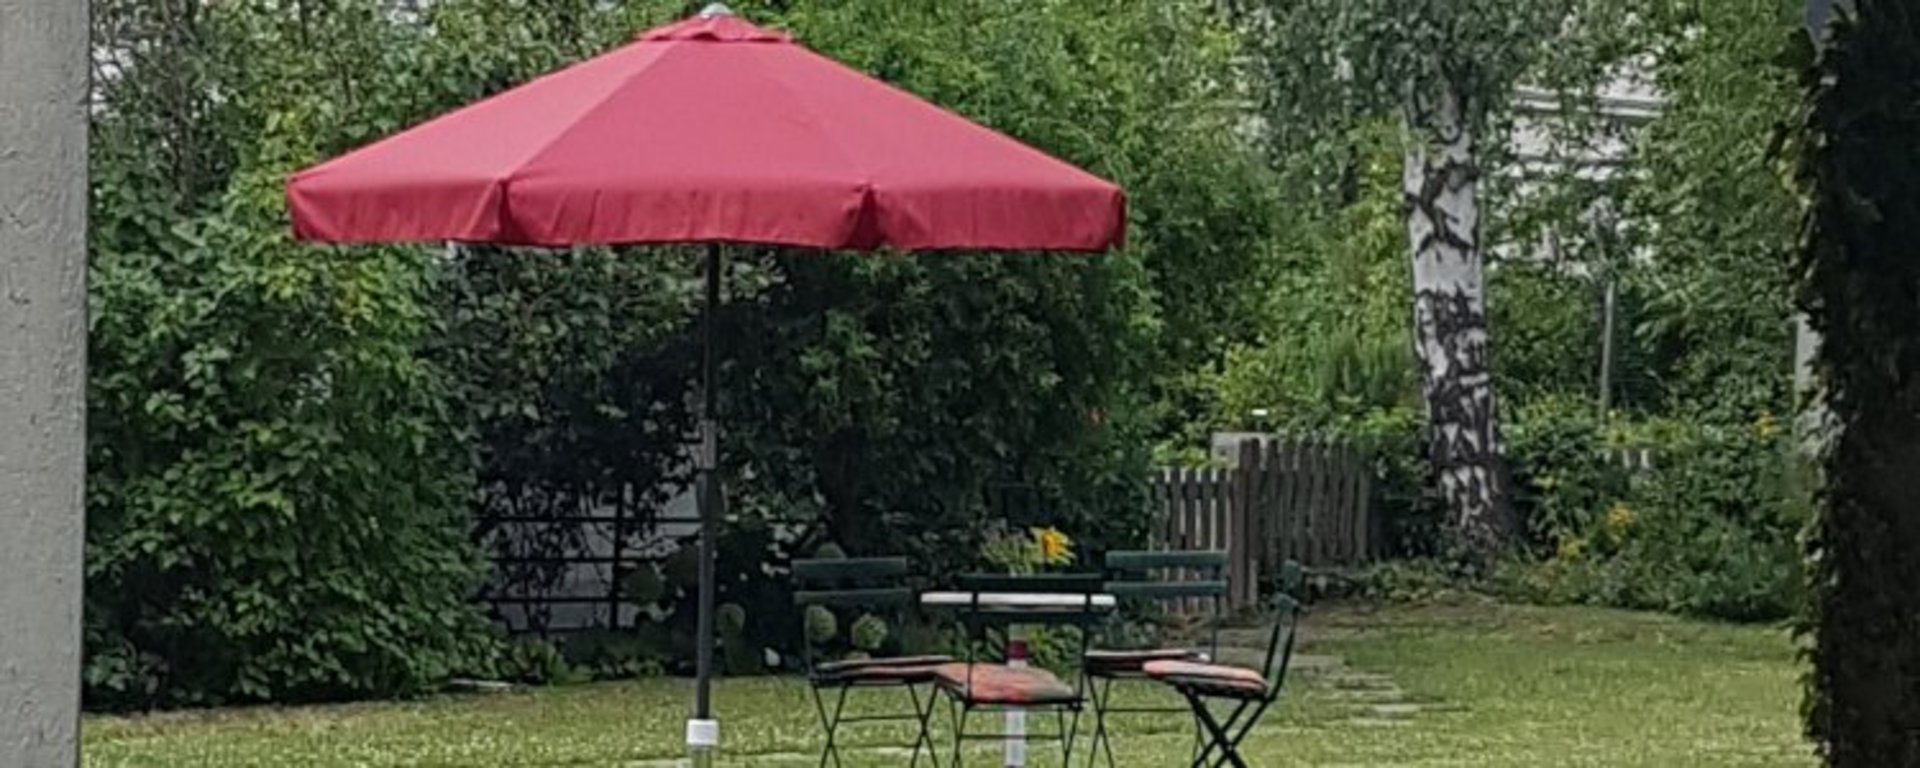 Neuer Sonnenschirm im Sommergarten. Bild jh